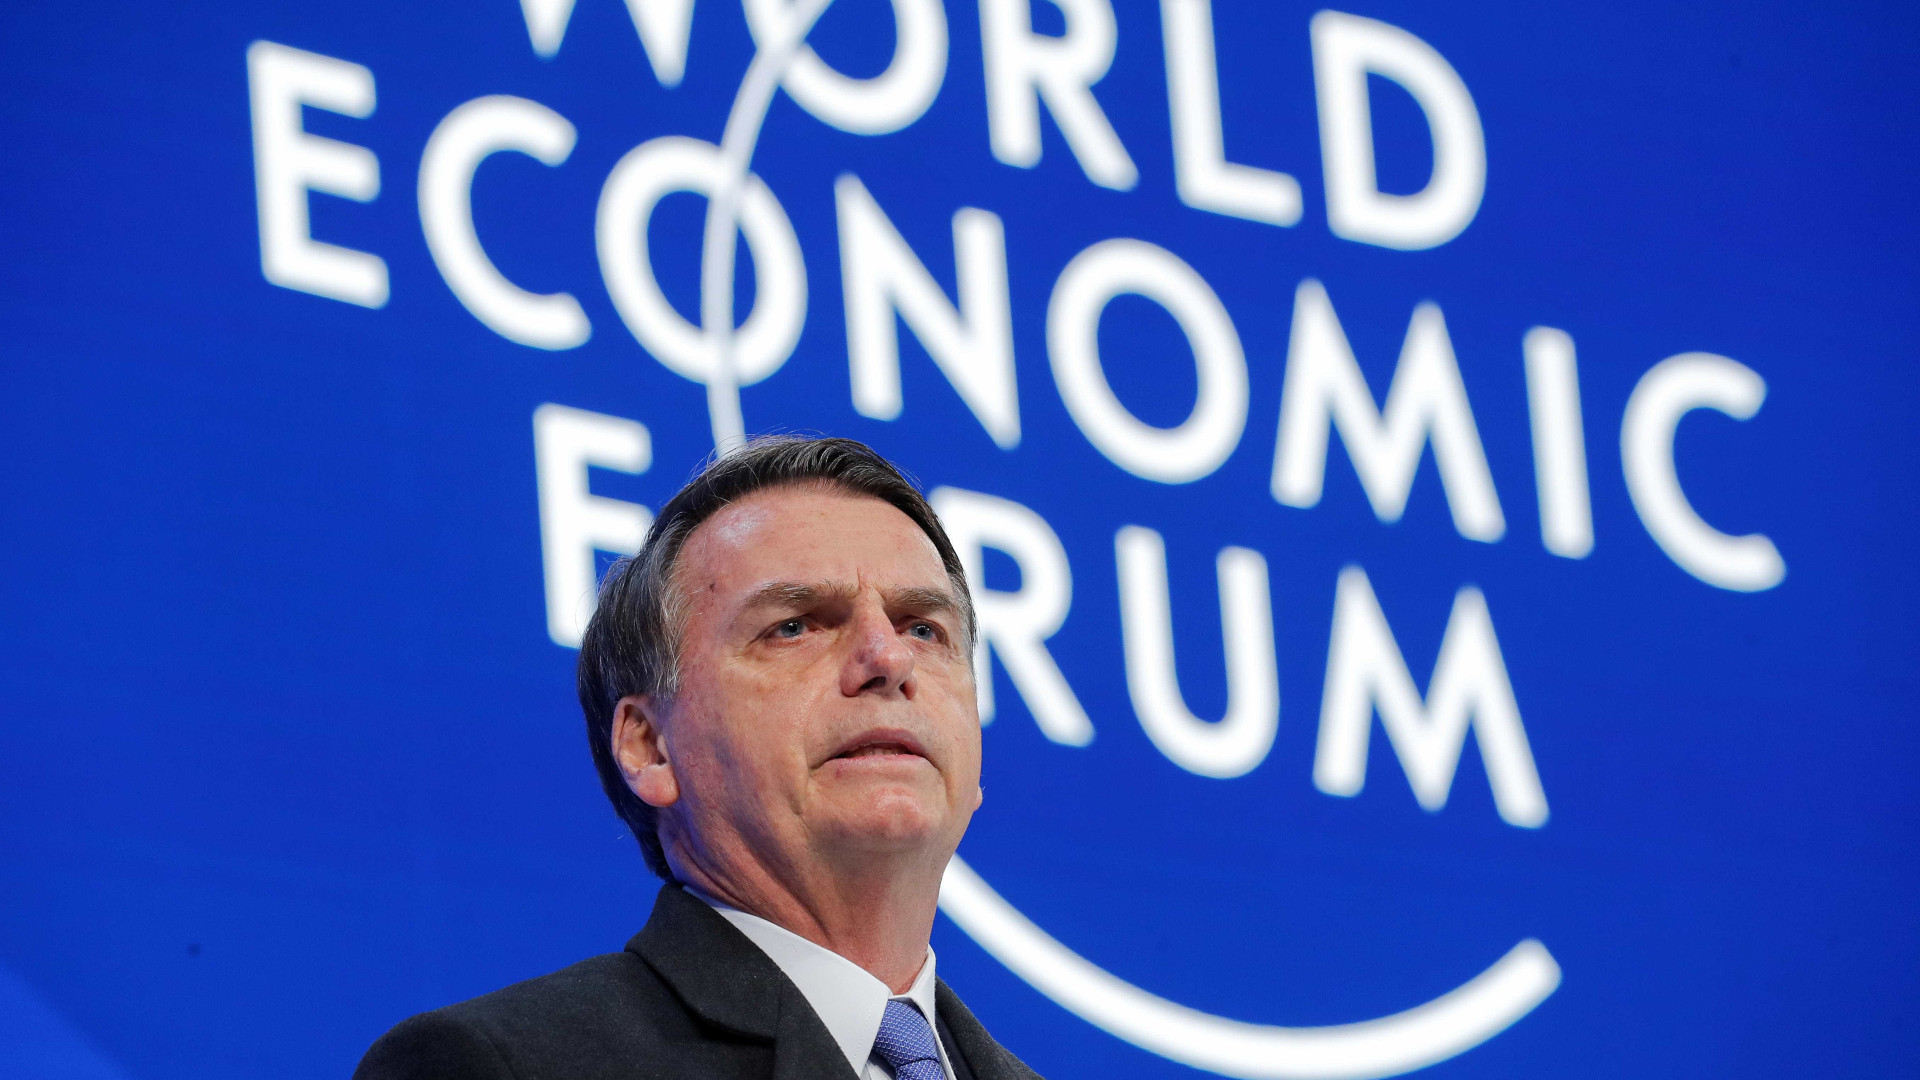 Imprensa internacional critica discurso de Bolsonaro em Davos: 'Fiasco'